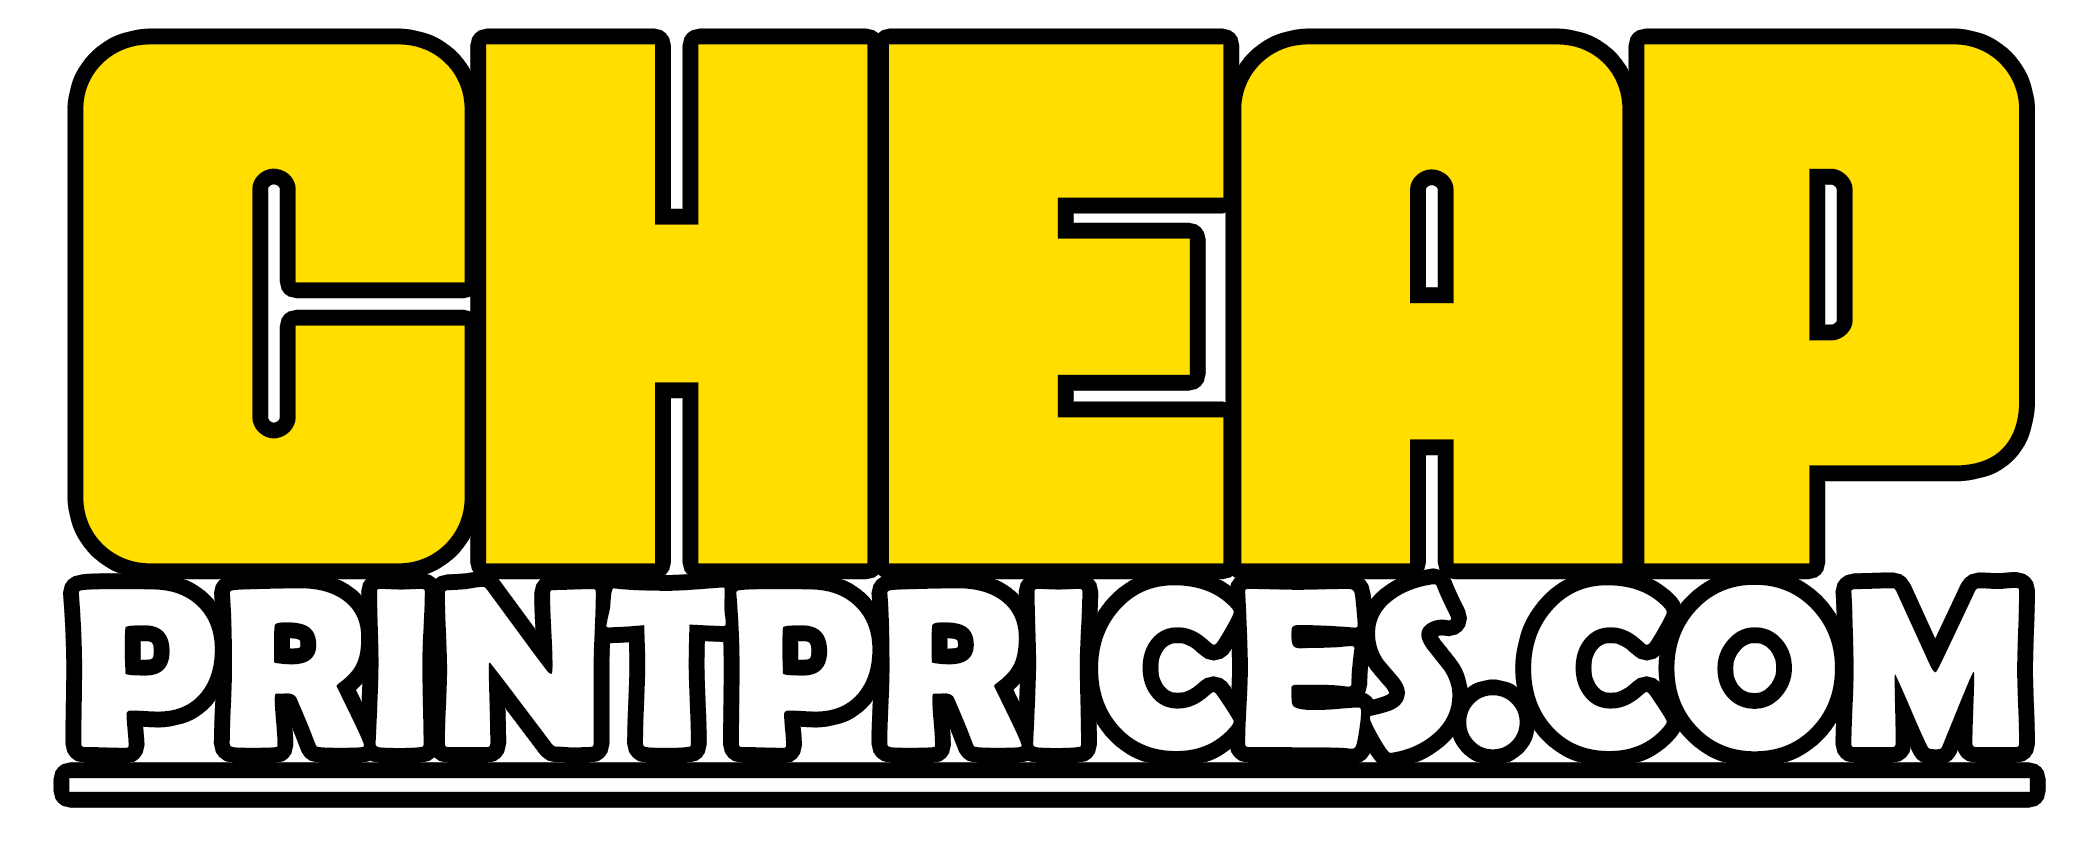 cheap-print-prices-logo-2020